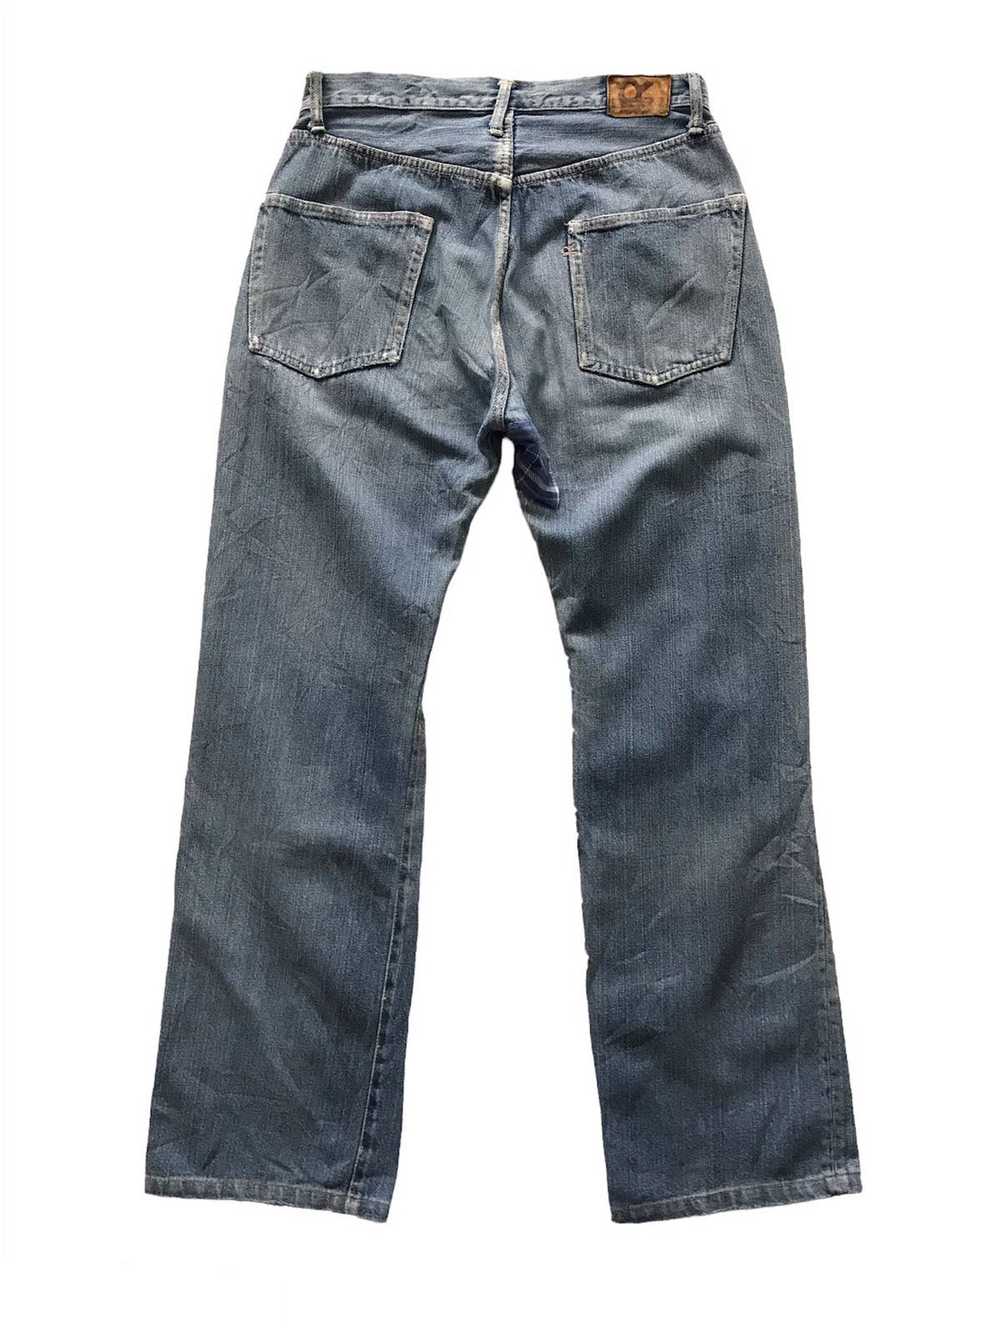 45rpm - Distress R 45 Rpm Denim Jeans Pant - image 2